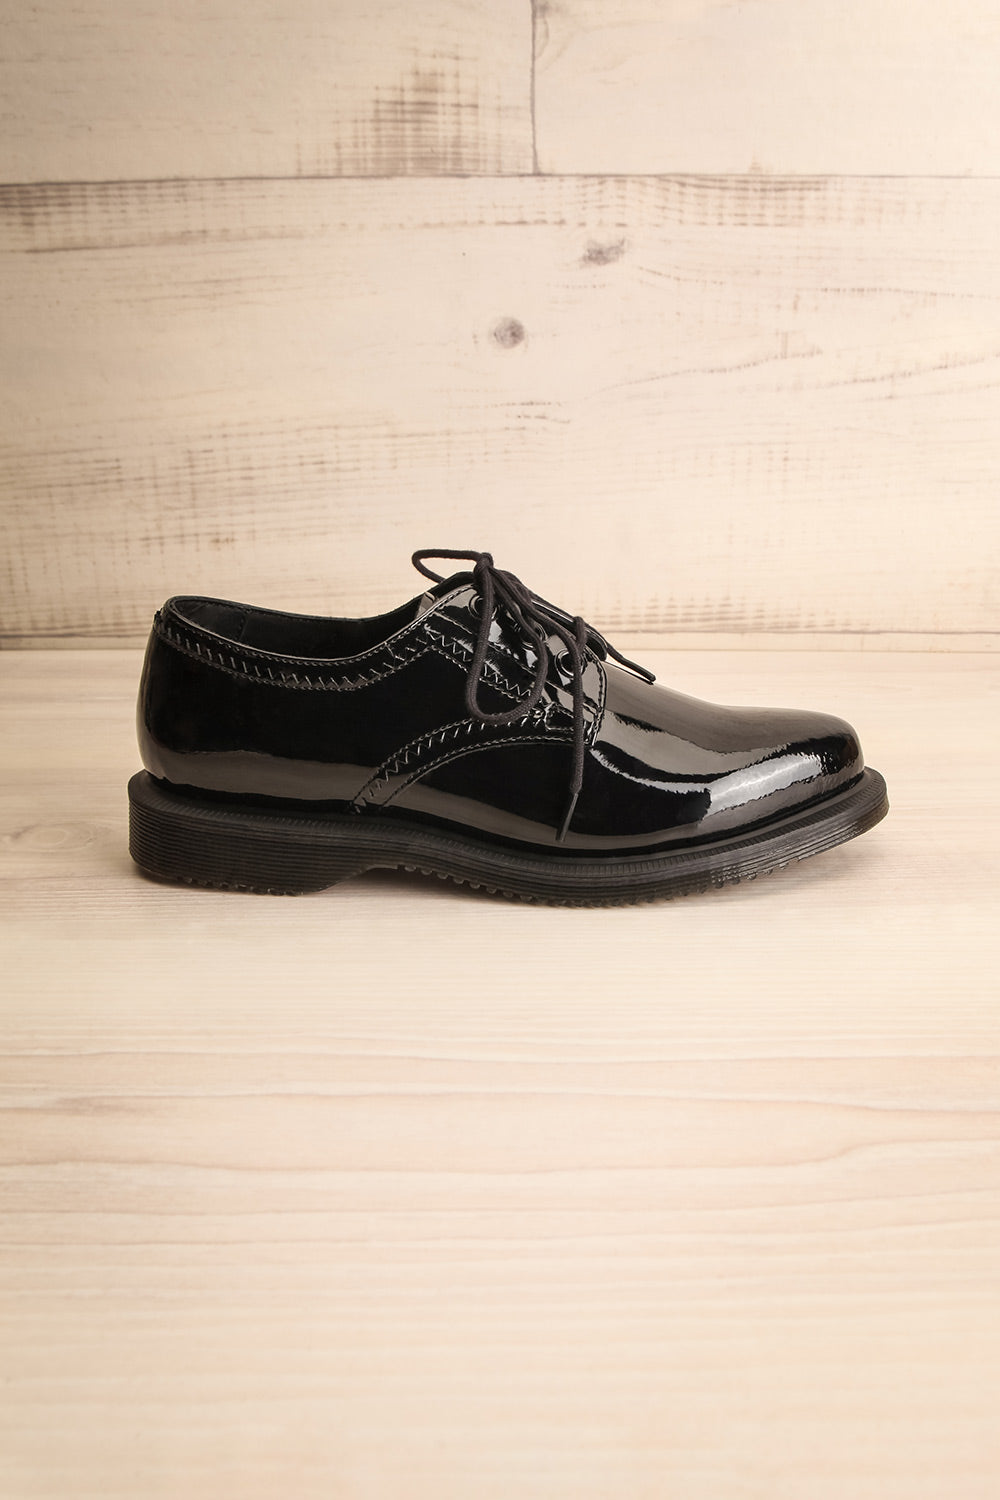 Undiconus Patent Black Dr. Martens Shoes | La Petite Garçonne Chpt. 2 5